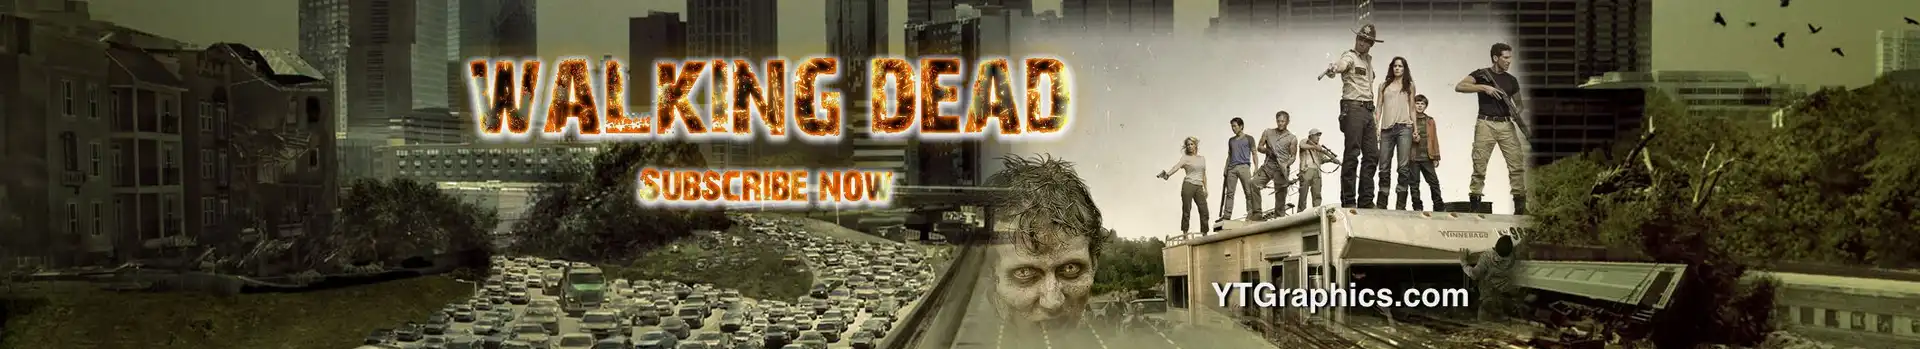 Walking Dead preview